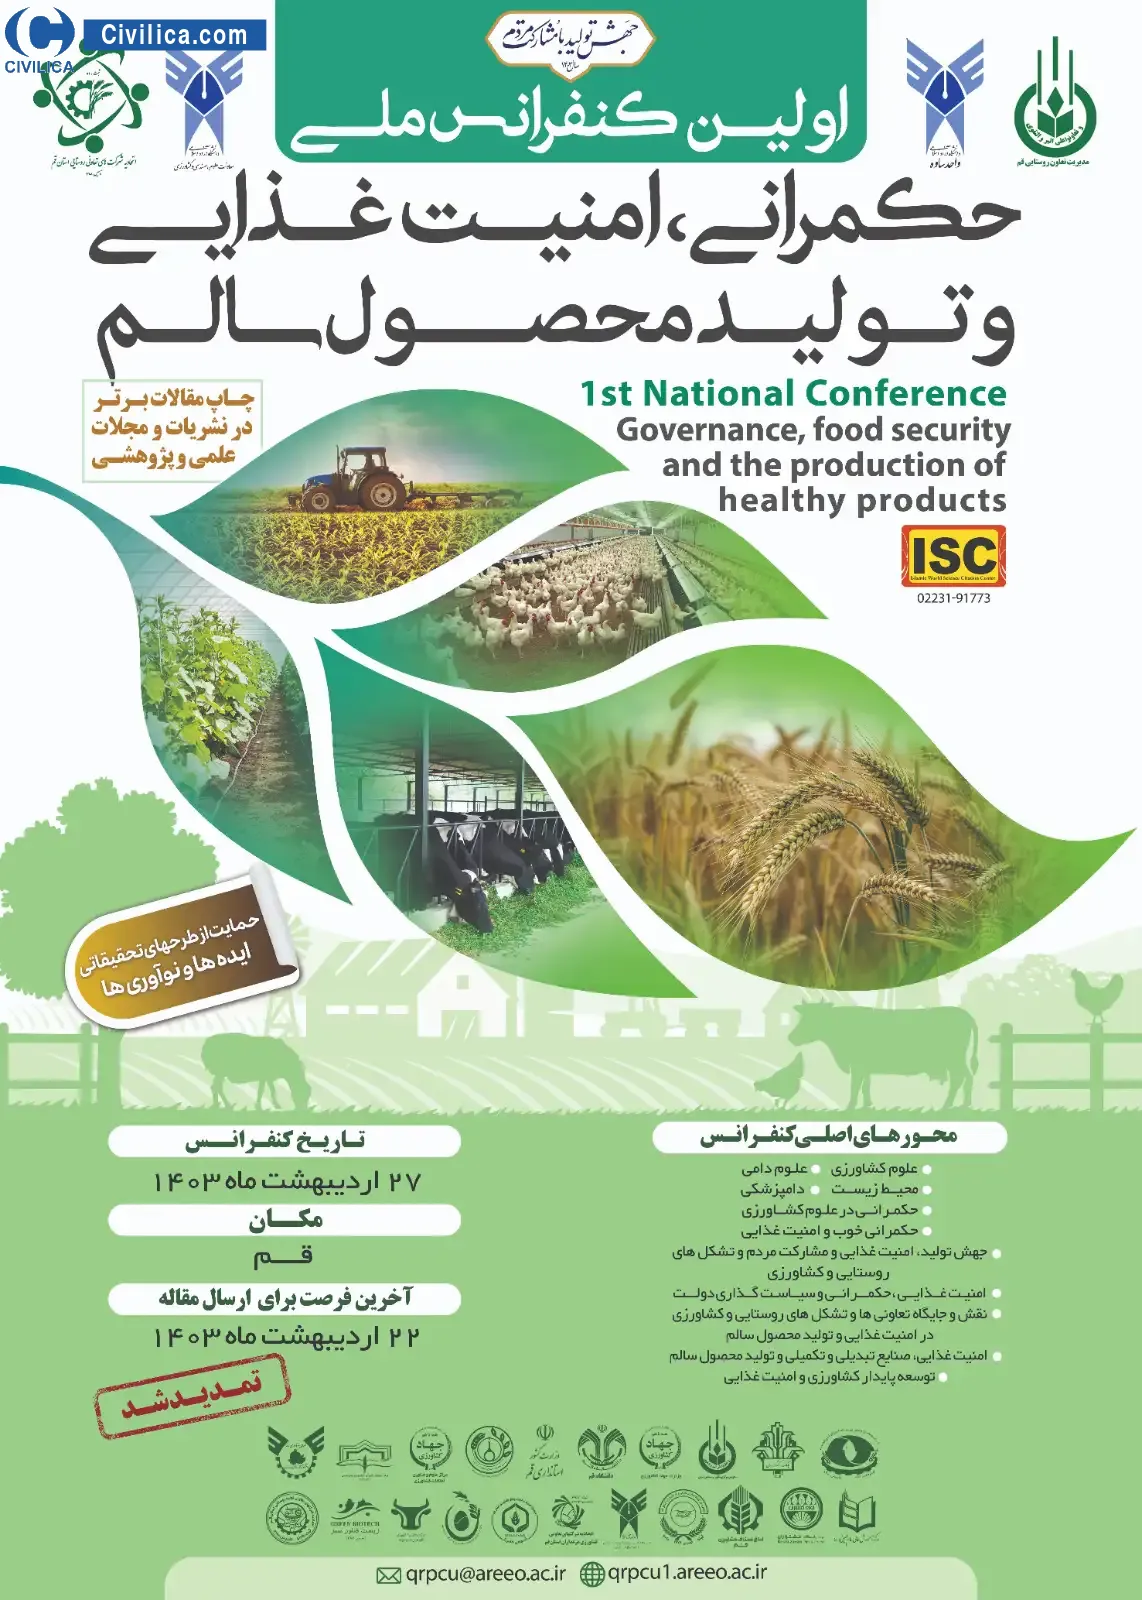 فراخوان مقاله اولین کنفرانس حکمرانی، امنیت غذایی و تولید محصول سالم